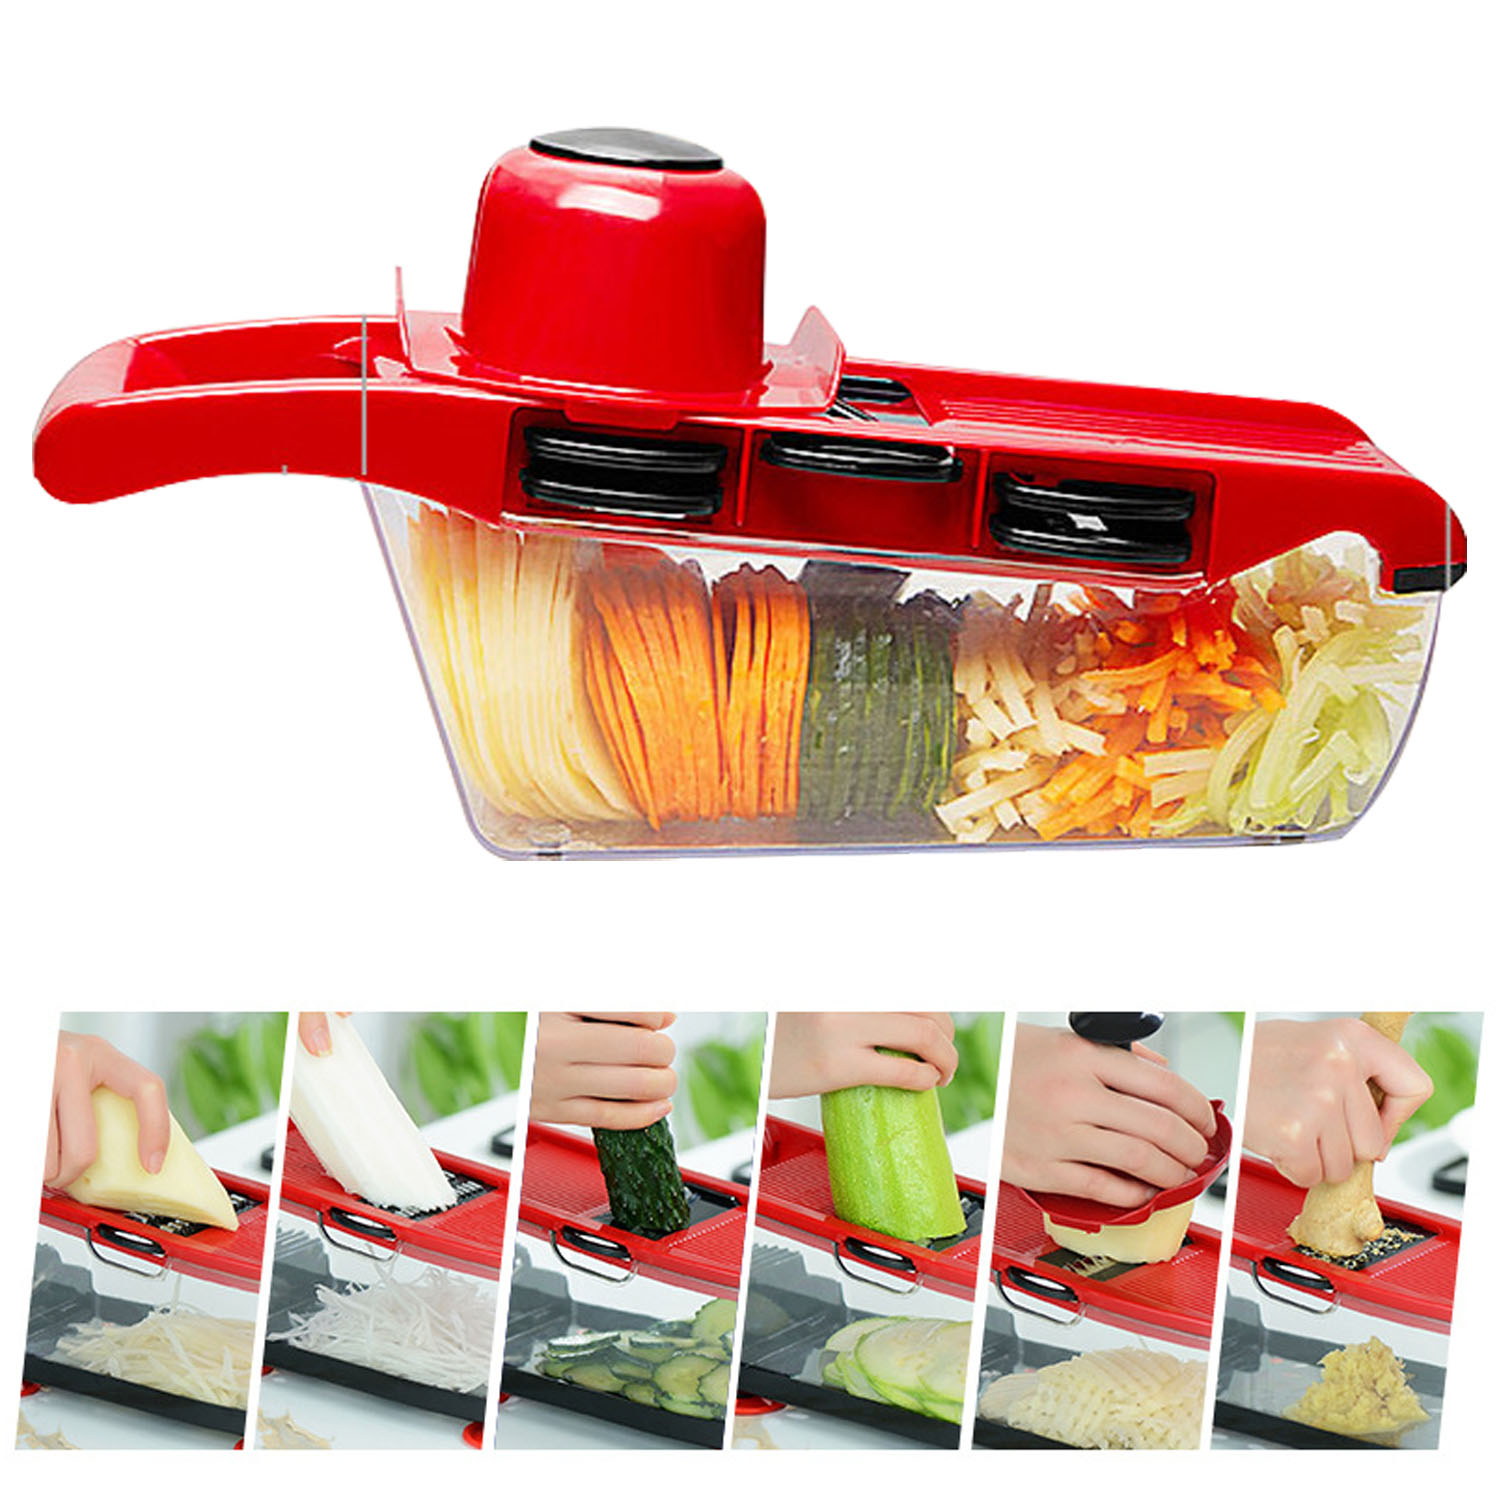 Multifunctional Vegetable Slicer, Kitchen Food Slicer, 6-in-1 Vegetable Manual Grater, Potato Chopper Veggie Spiralizer, Onion & Vegetables Slicer